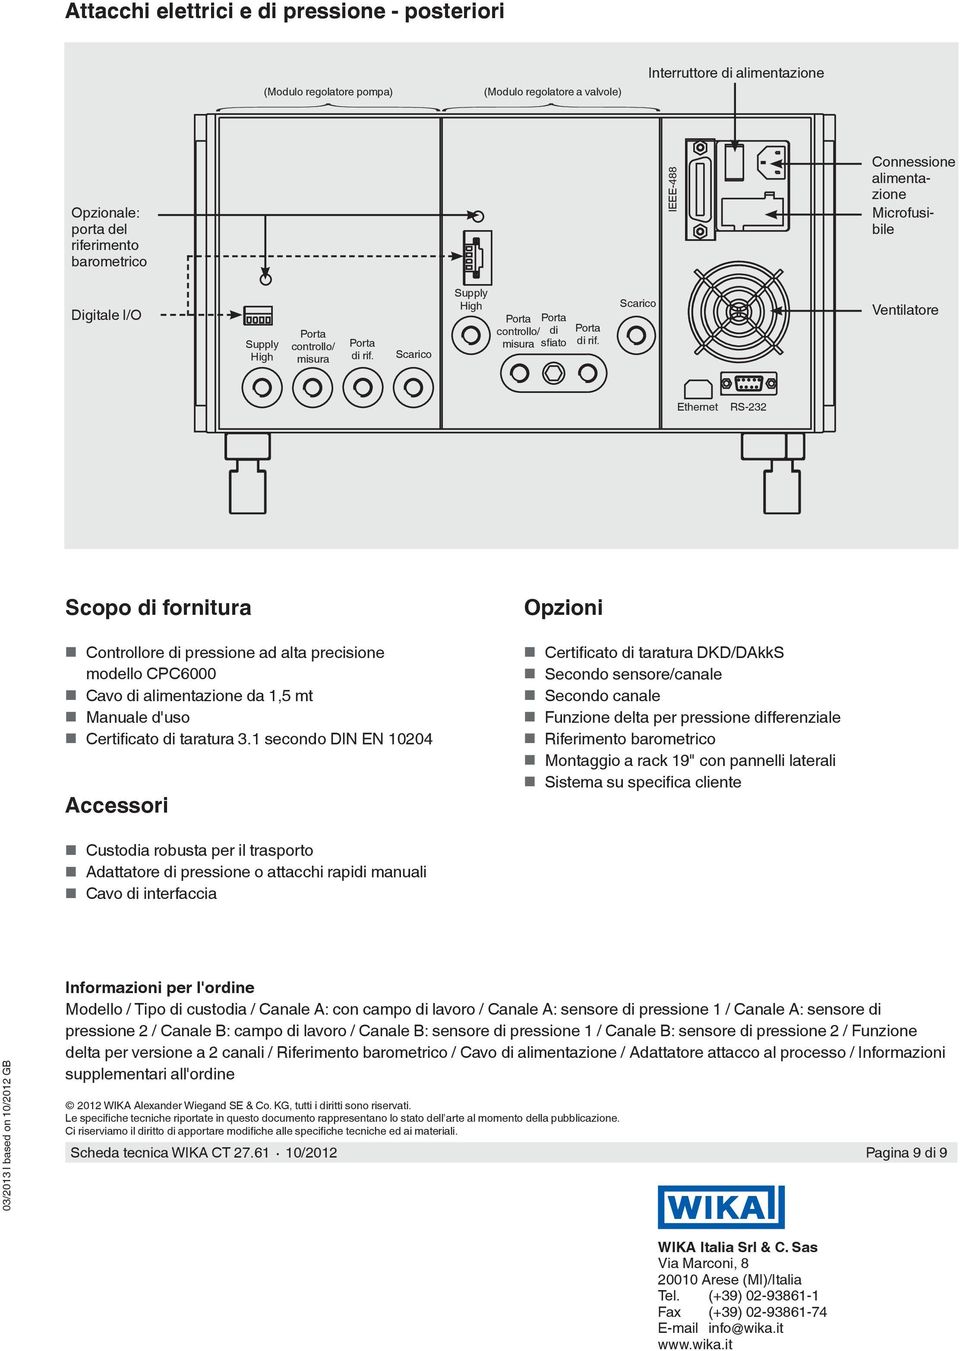 Scarico Ventilatore Ethernet RS-232 Scopo di fornitura Controllore di pressione ad alta precisione modello CPC6000 Cavo di alimentazione da 1,5 mt Manuale d'uso Certificato di taratura 3.